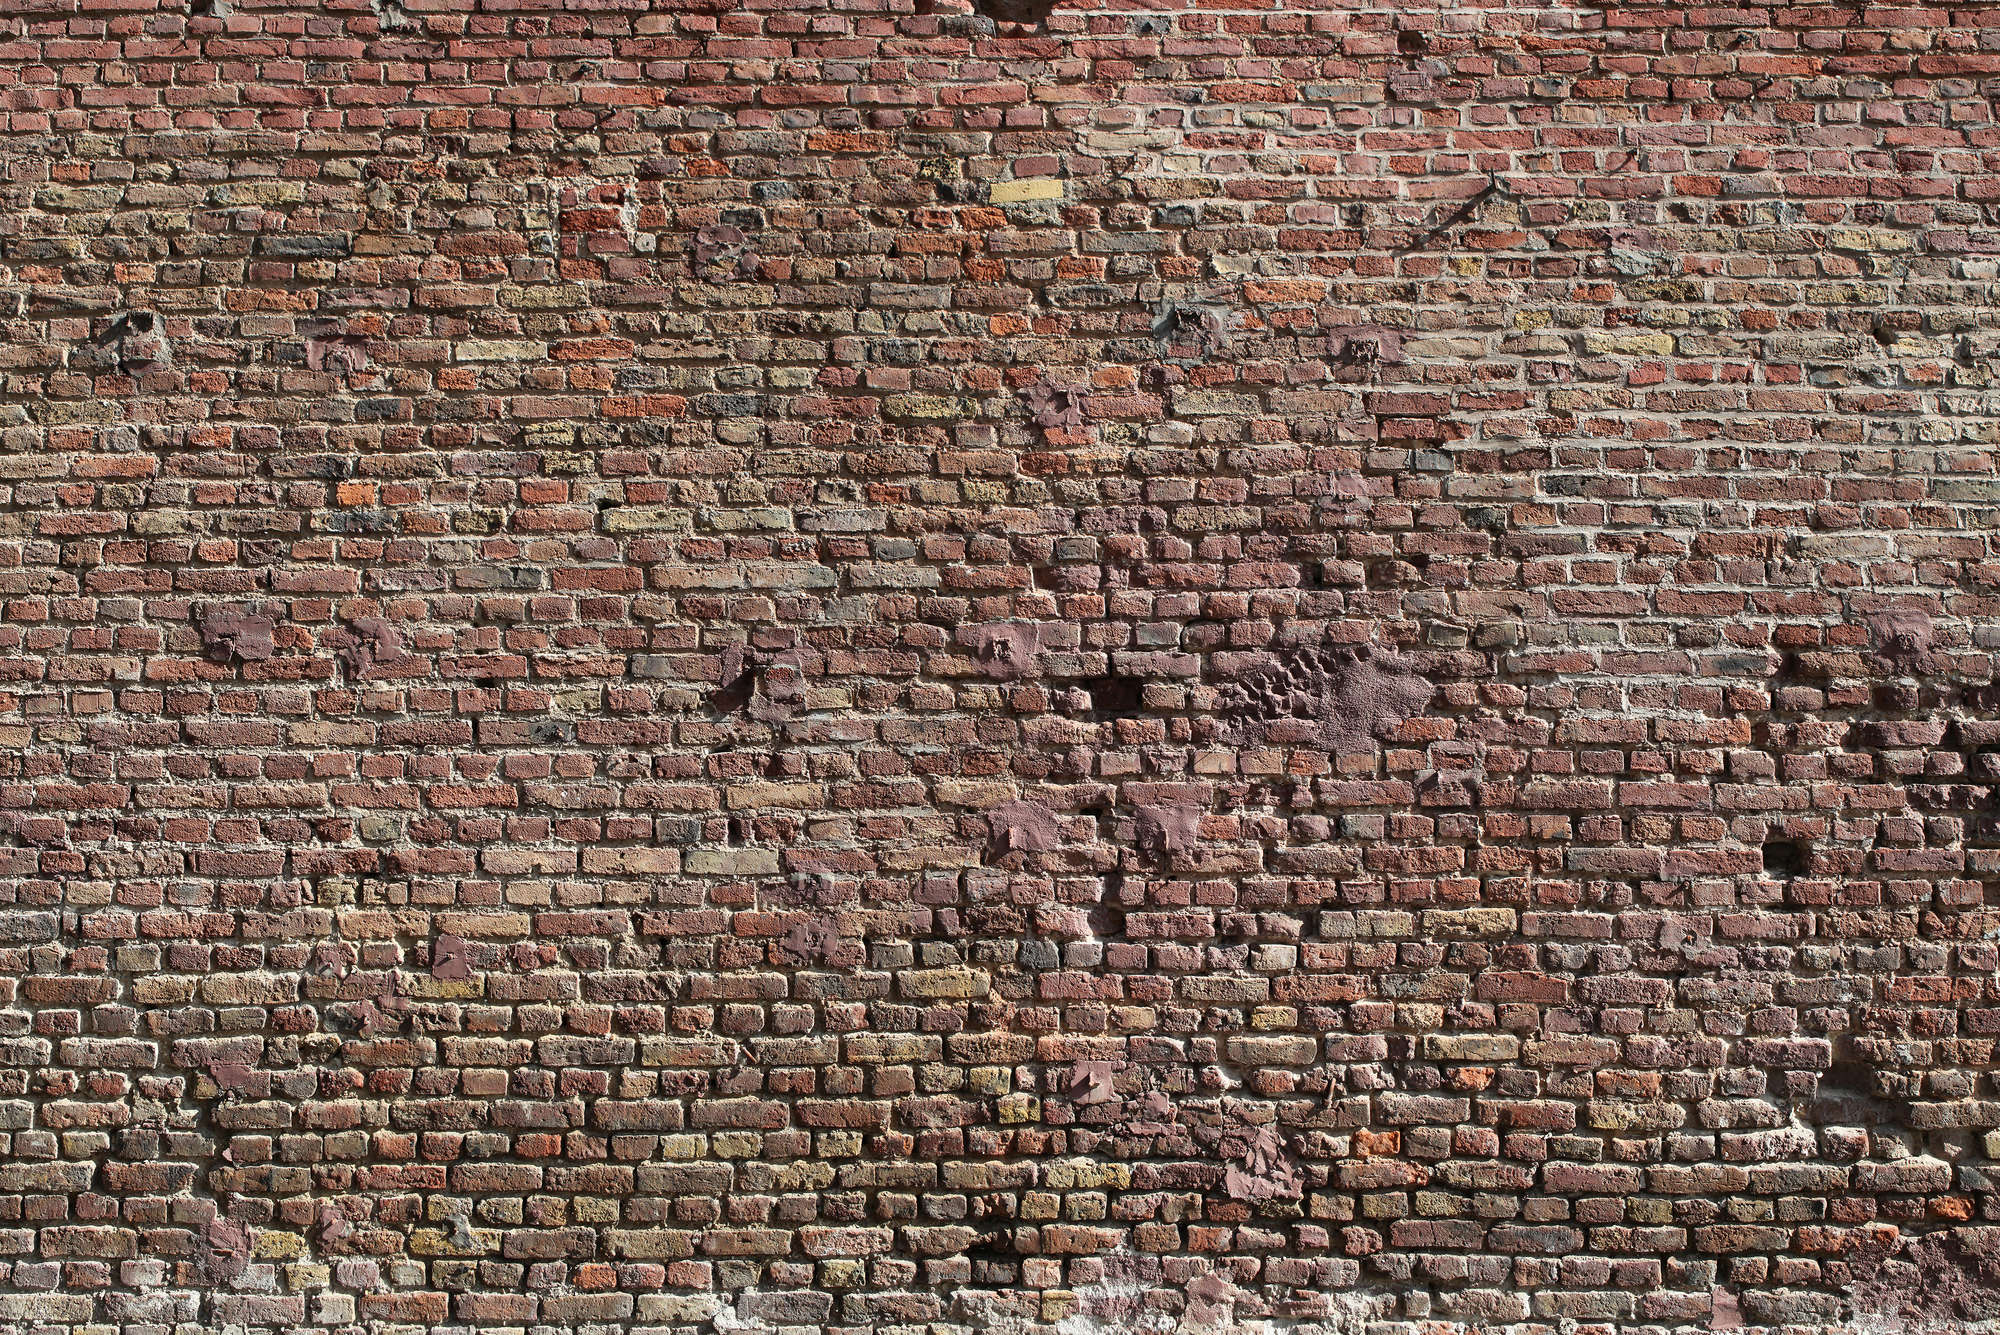             Fotomurali muro di mattoni rustico, mattoni rossi
        